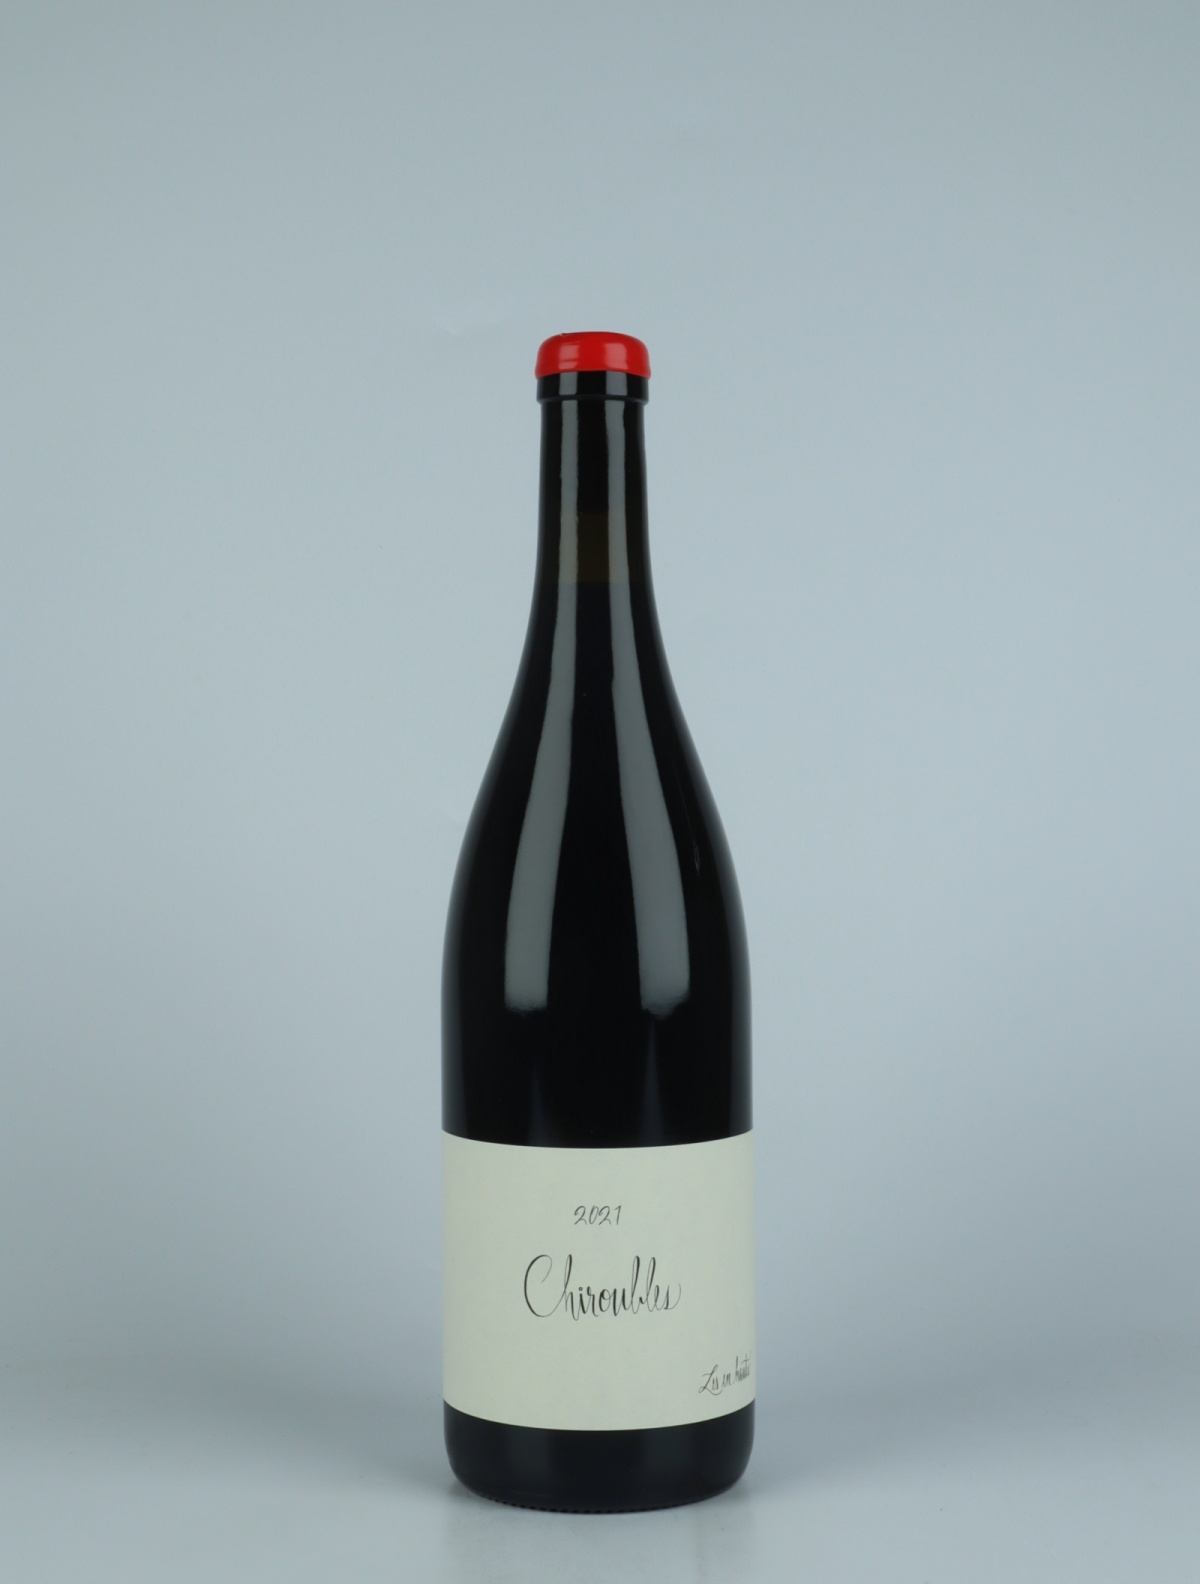 En flaske 2021 Chiroubles Rødvin fra Les En Hauts, Beaujolais i Frankrig